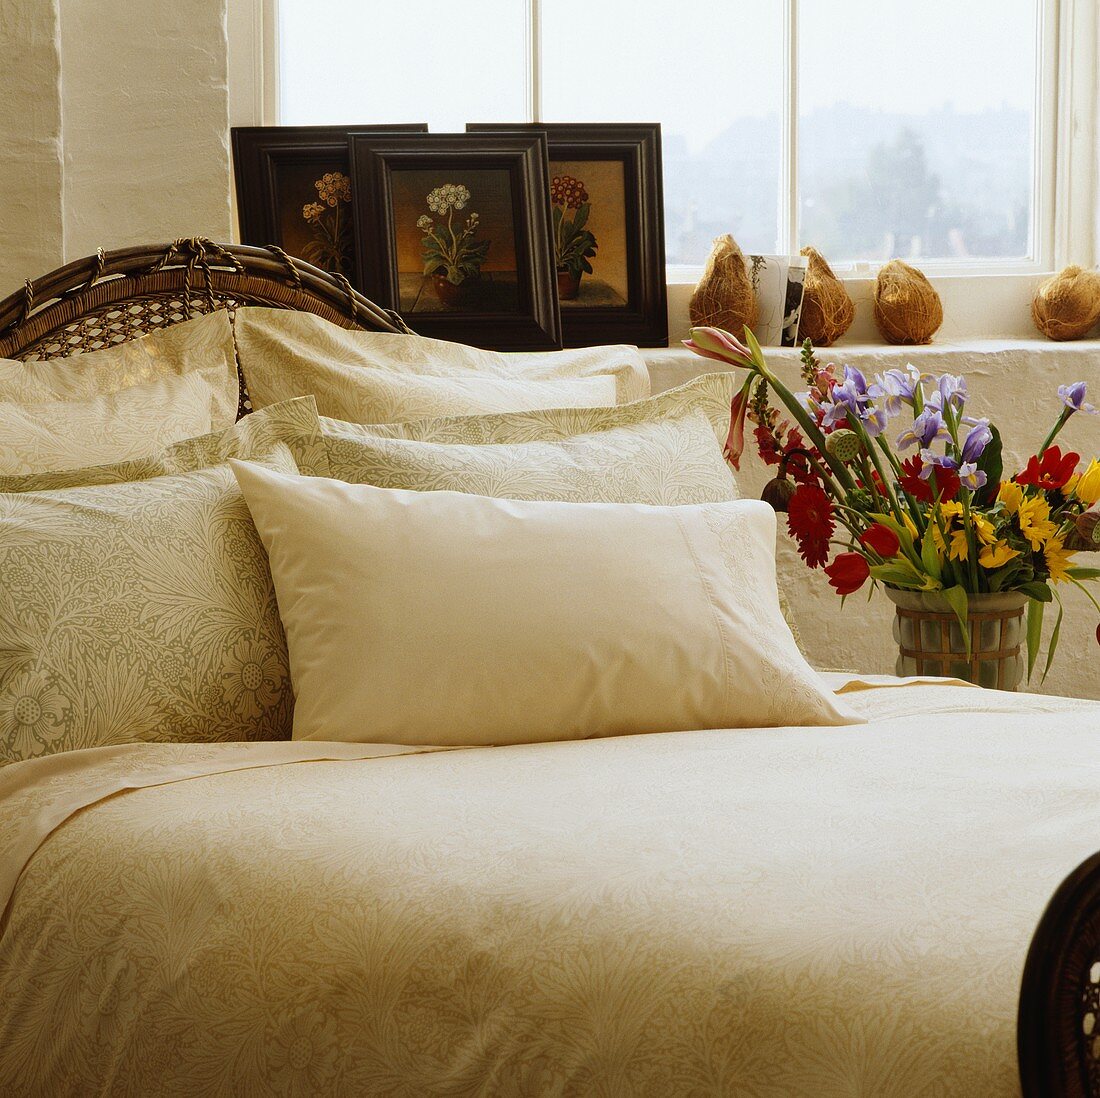 Antikes Bett mit cremefarbenen Kissen vor Bildern auf Fensterbank